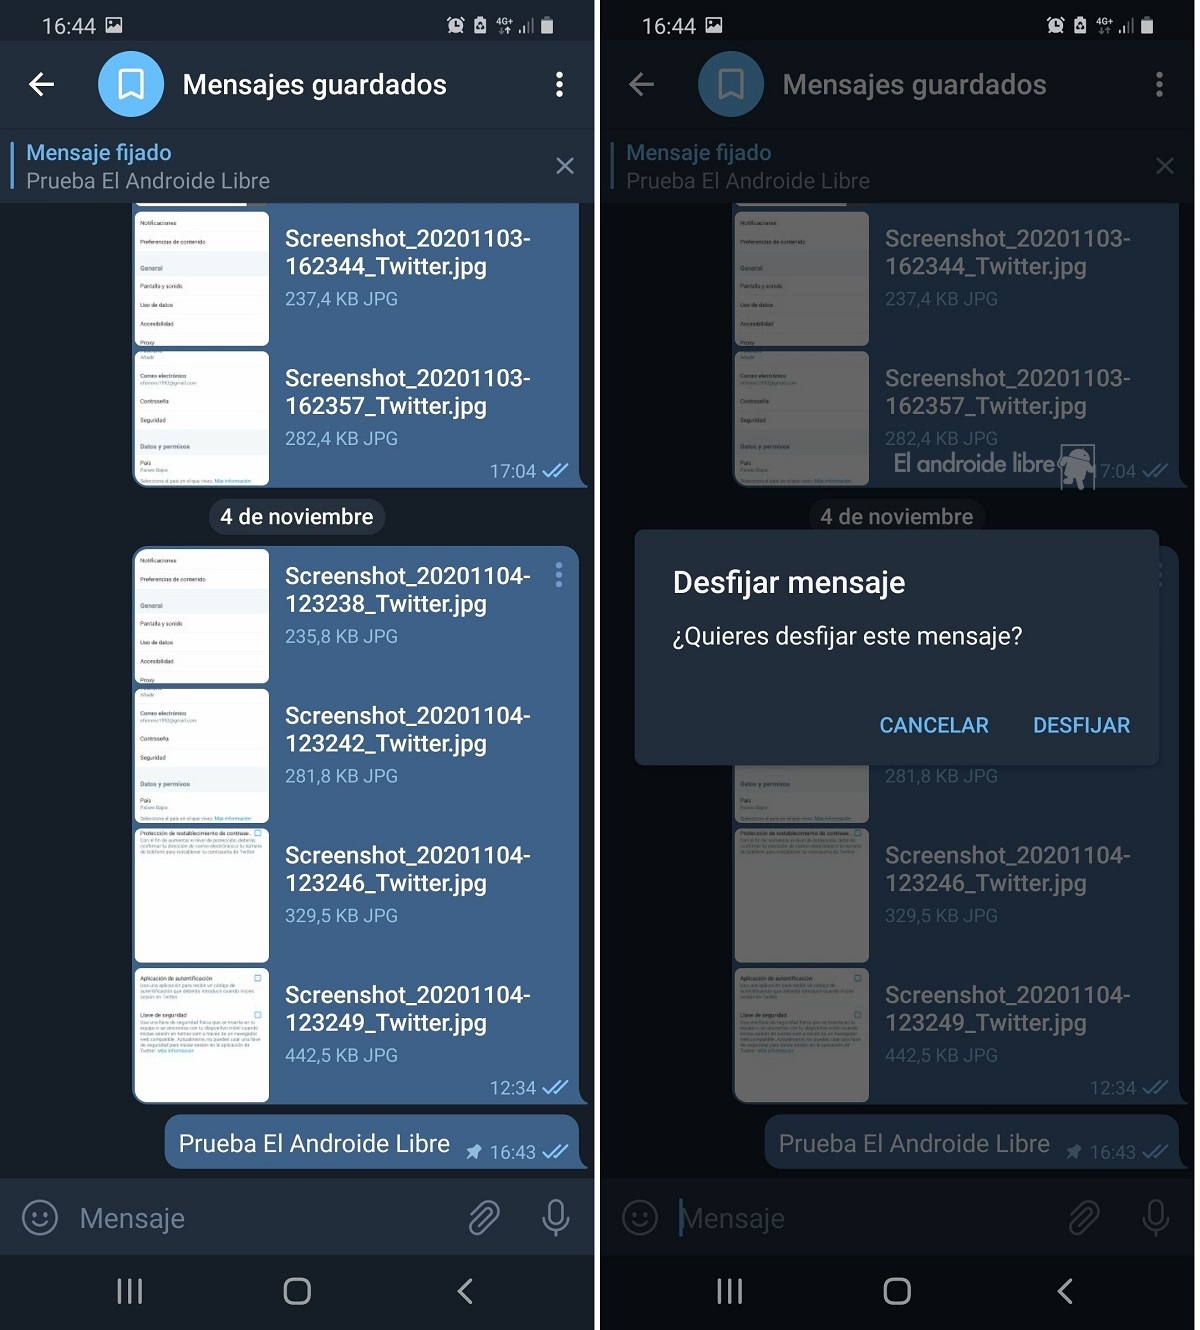 Desfijar mensaje en Telegram